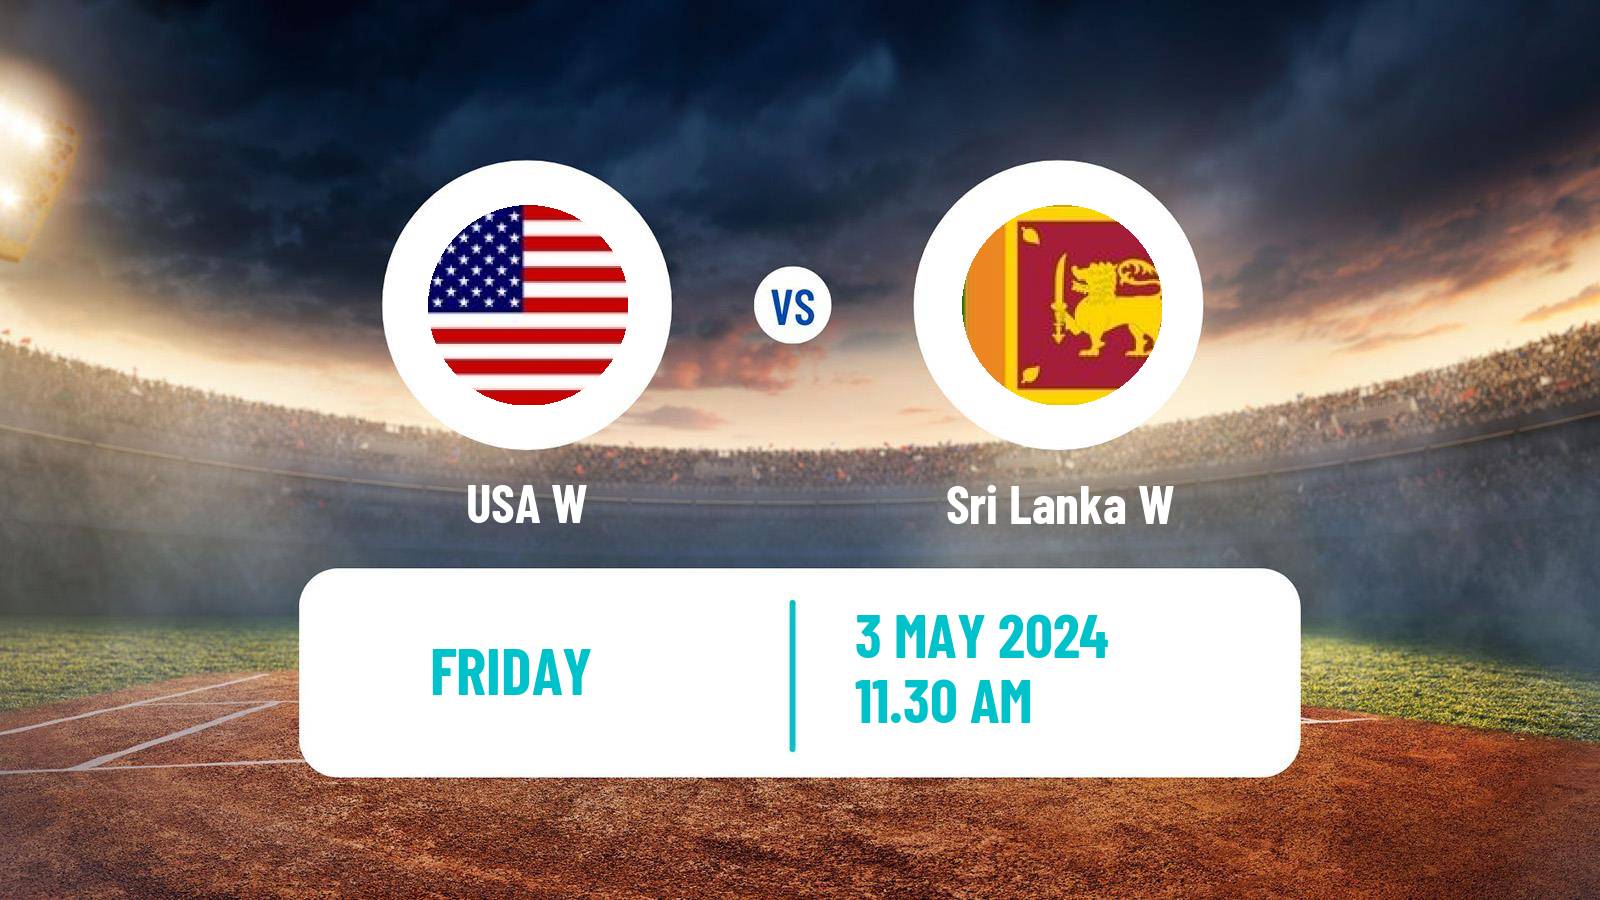 Cricket ICC World Twenty20 Women Sri Lanka W - USA W